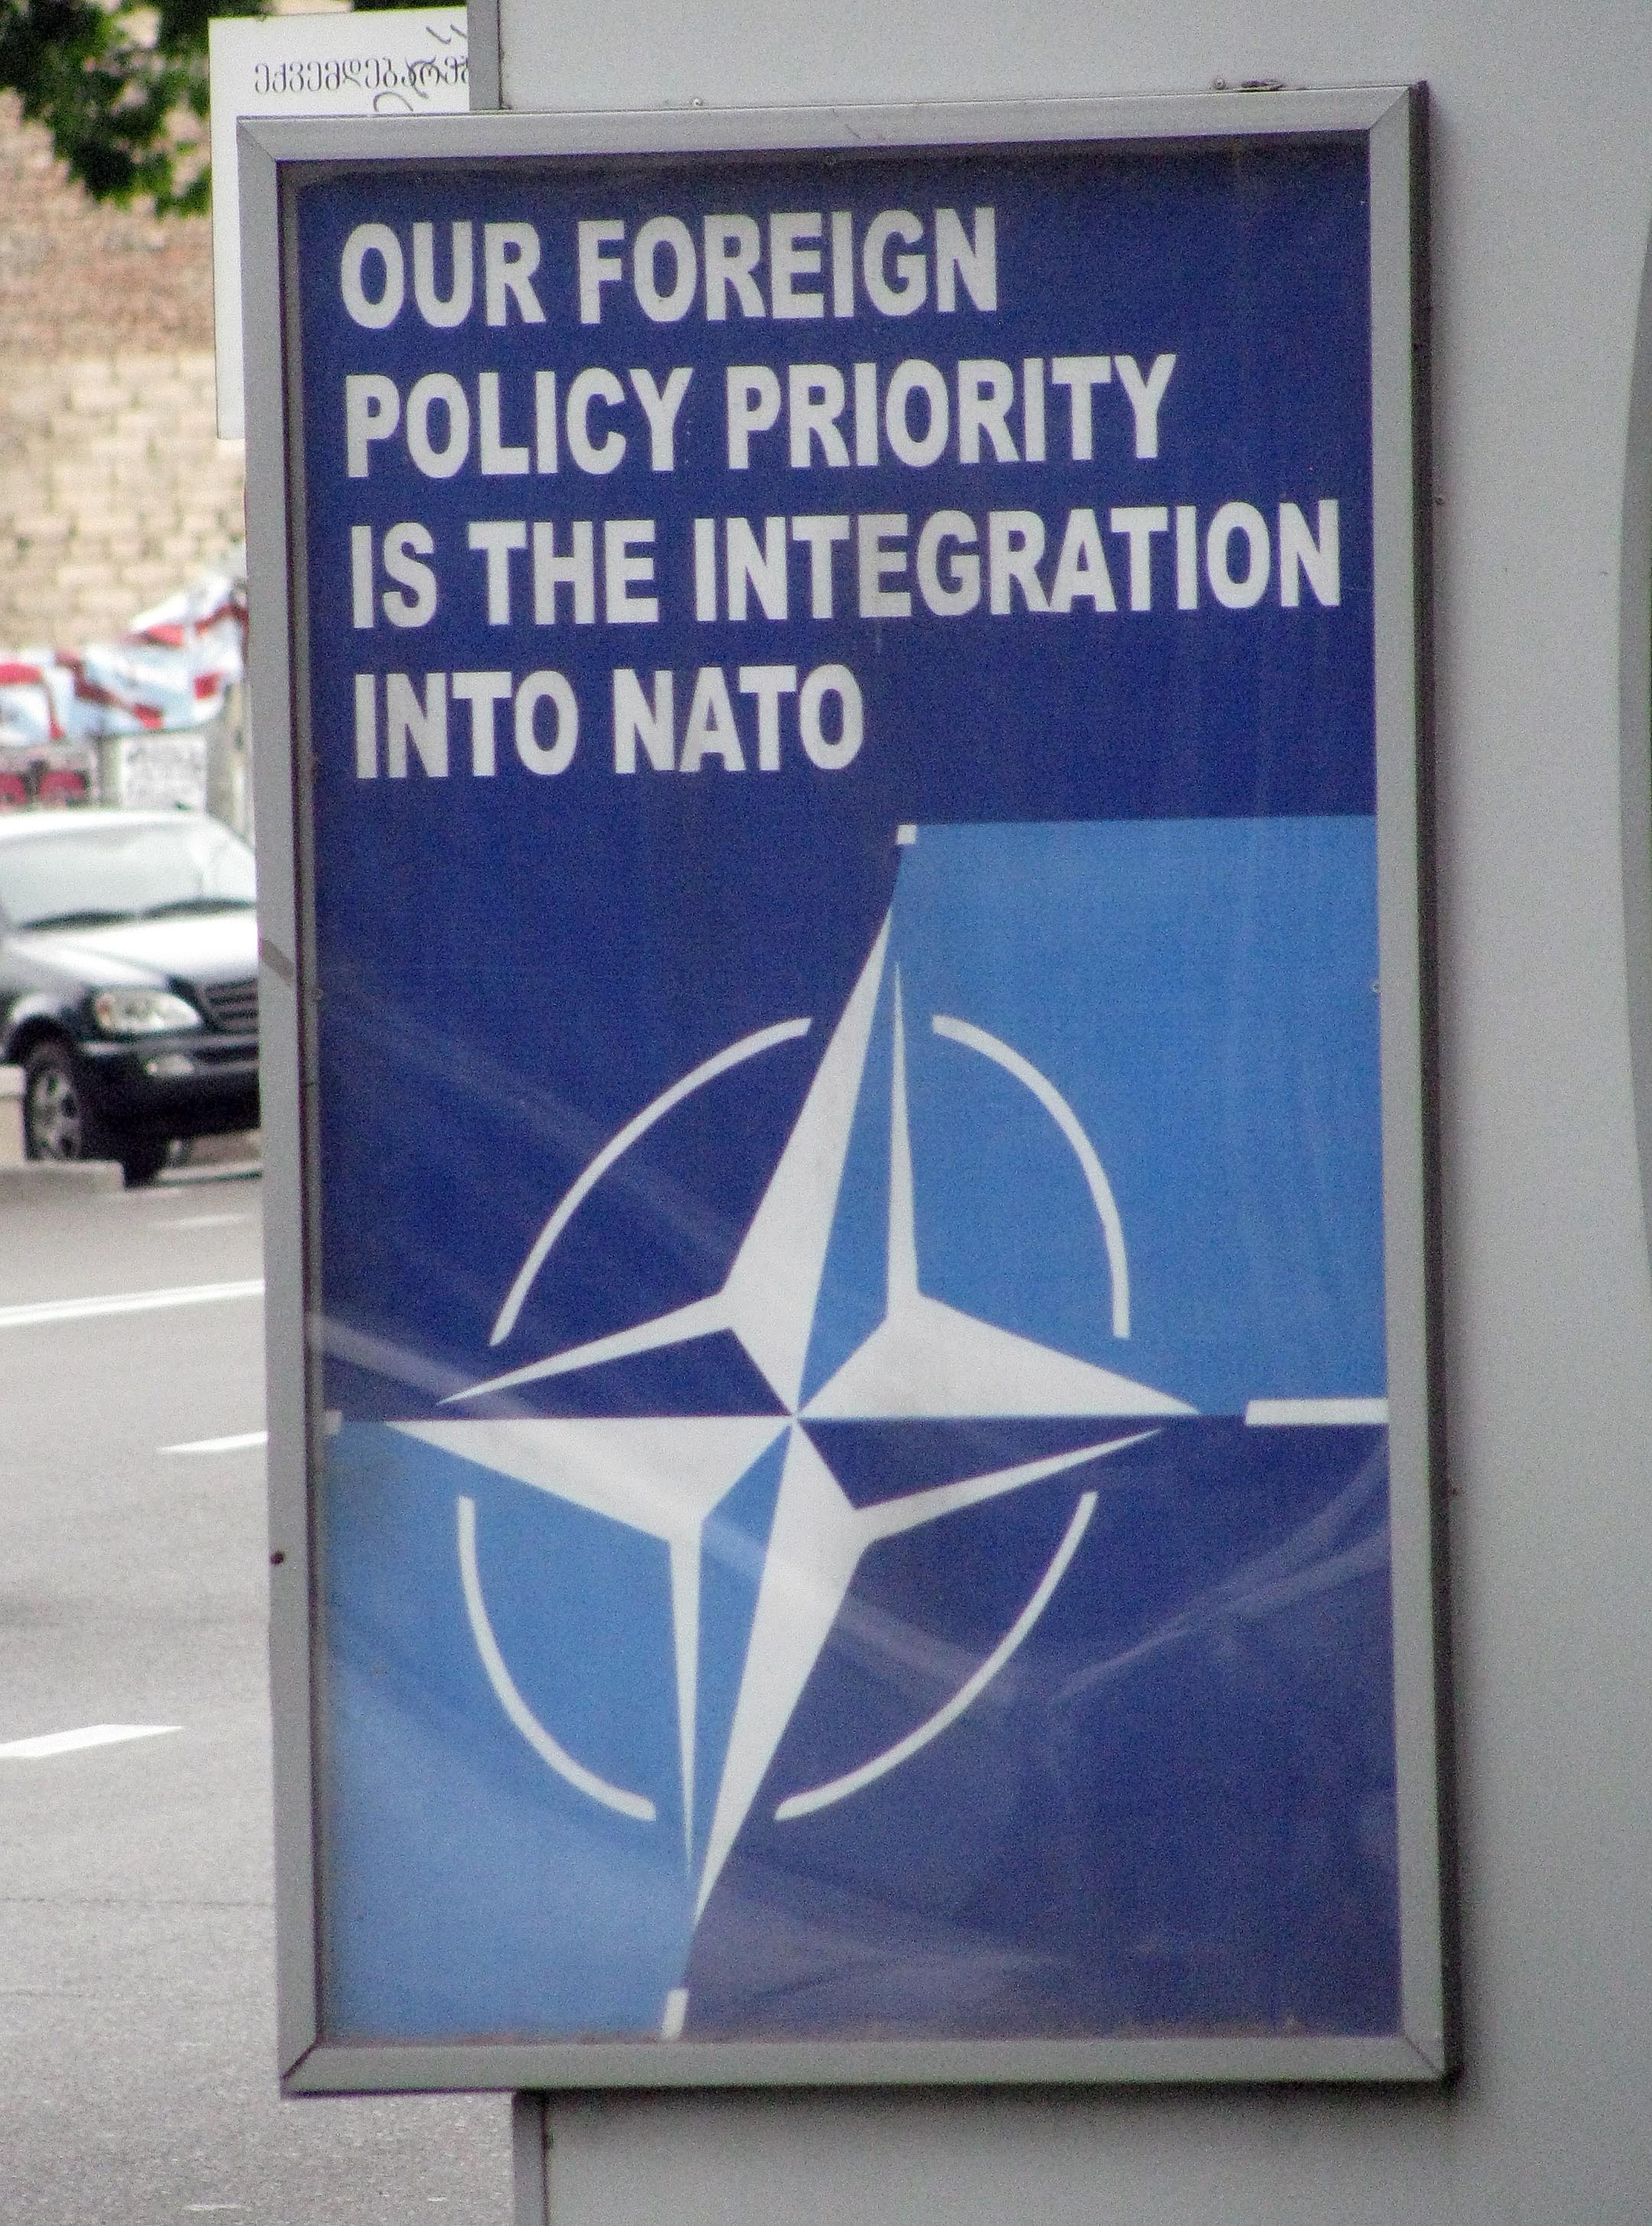 Pro-NATO